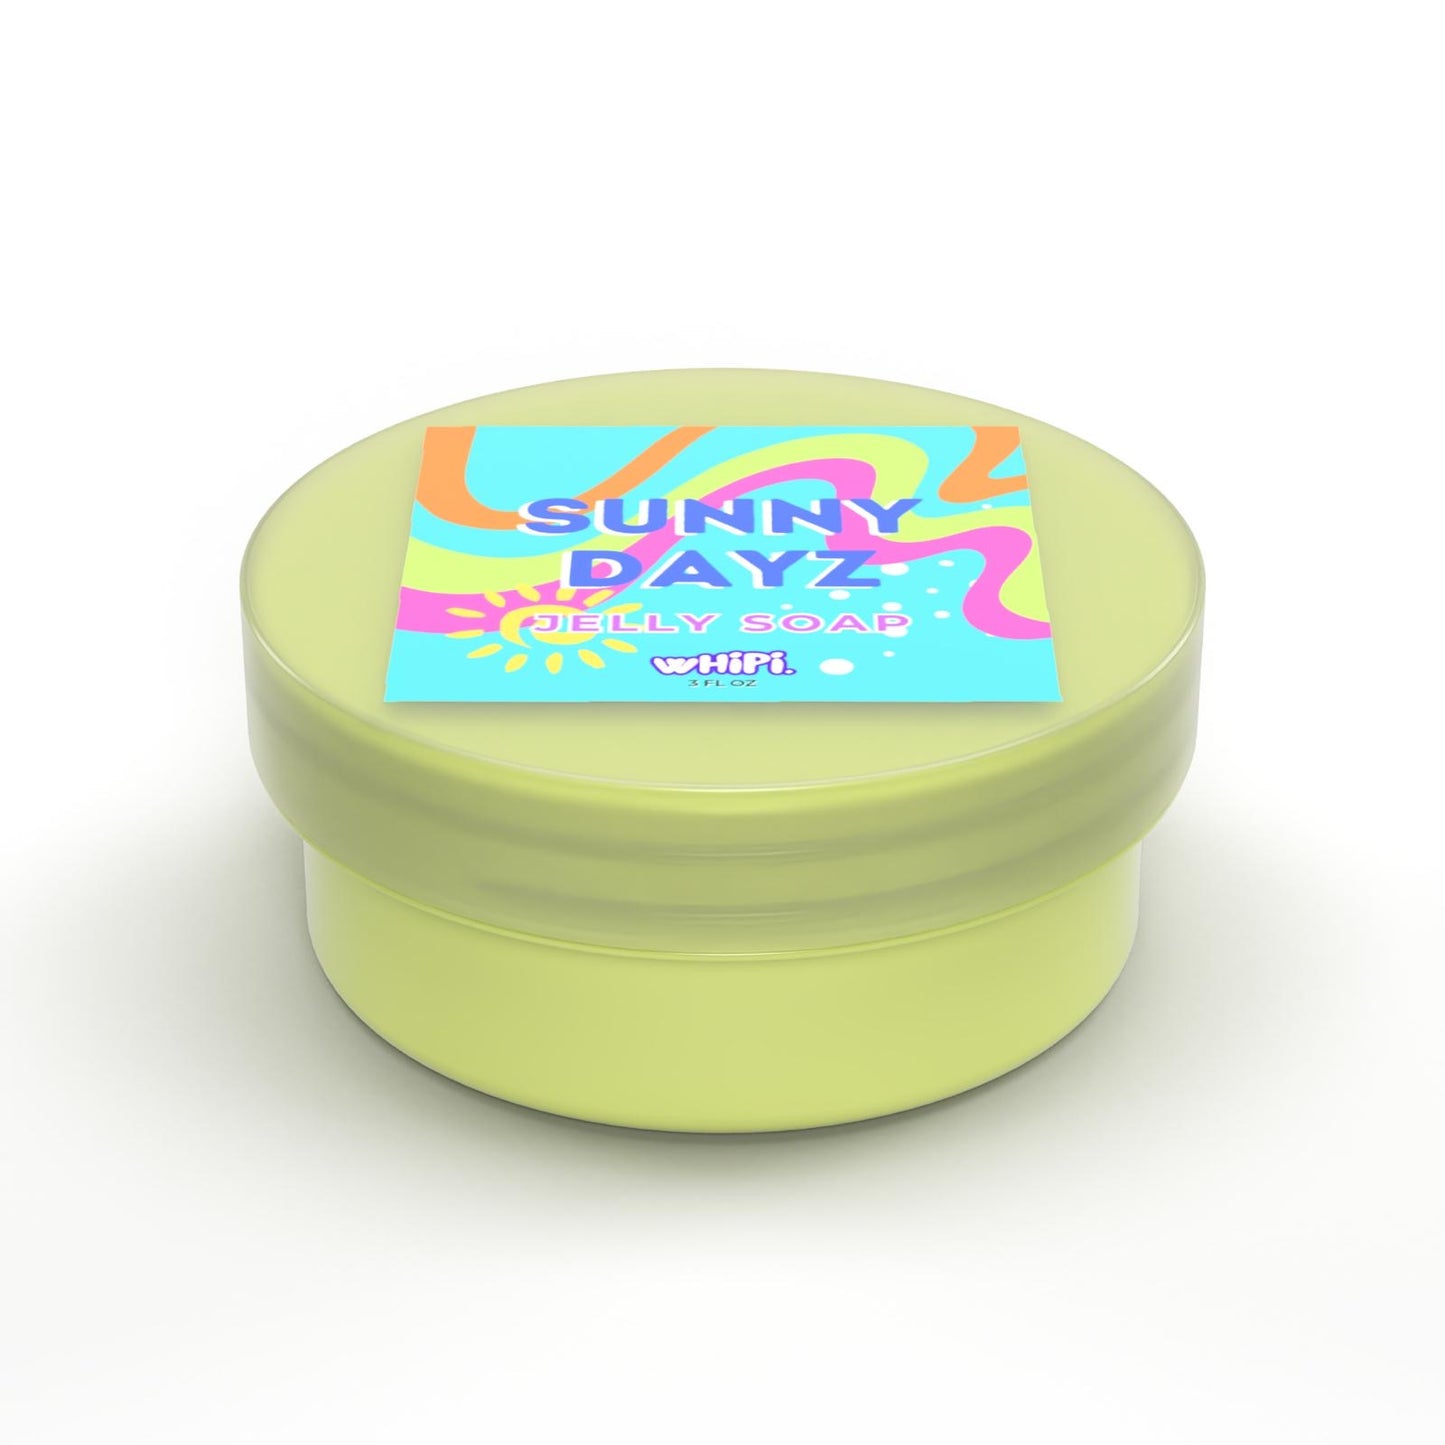 Sunny Dayz jelly soap